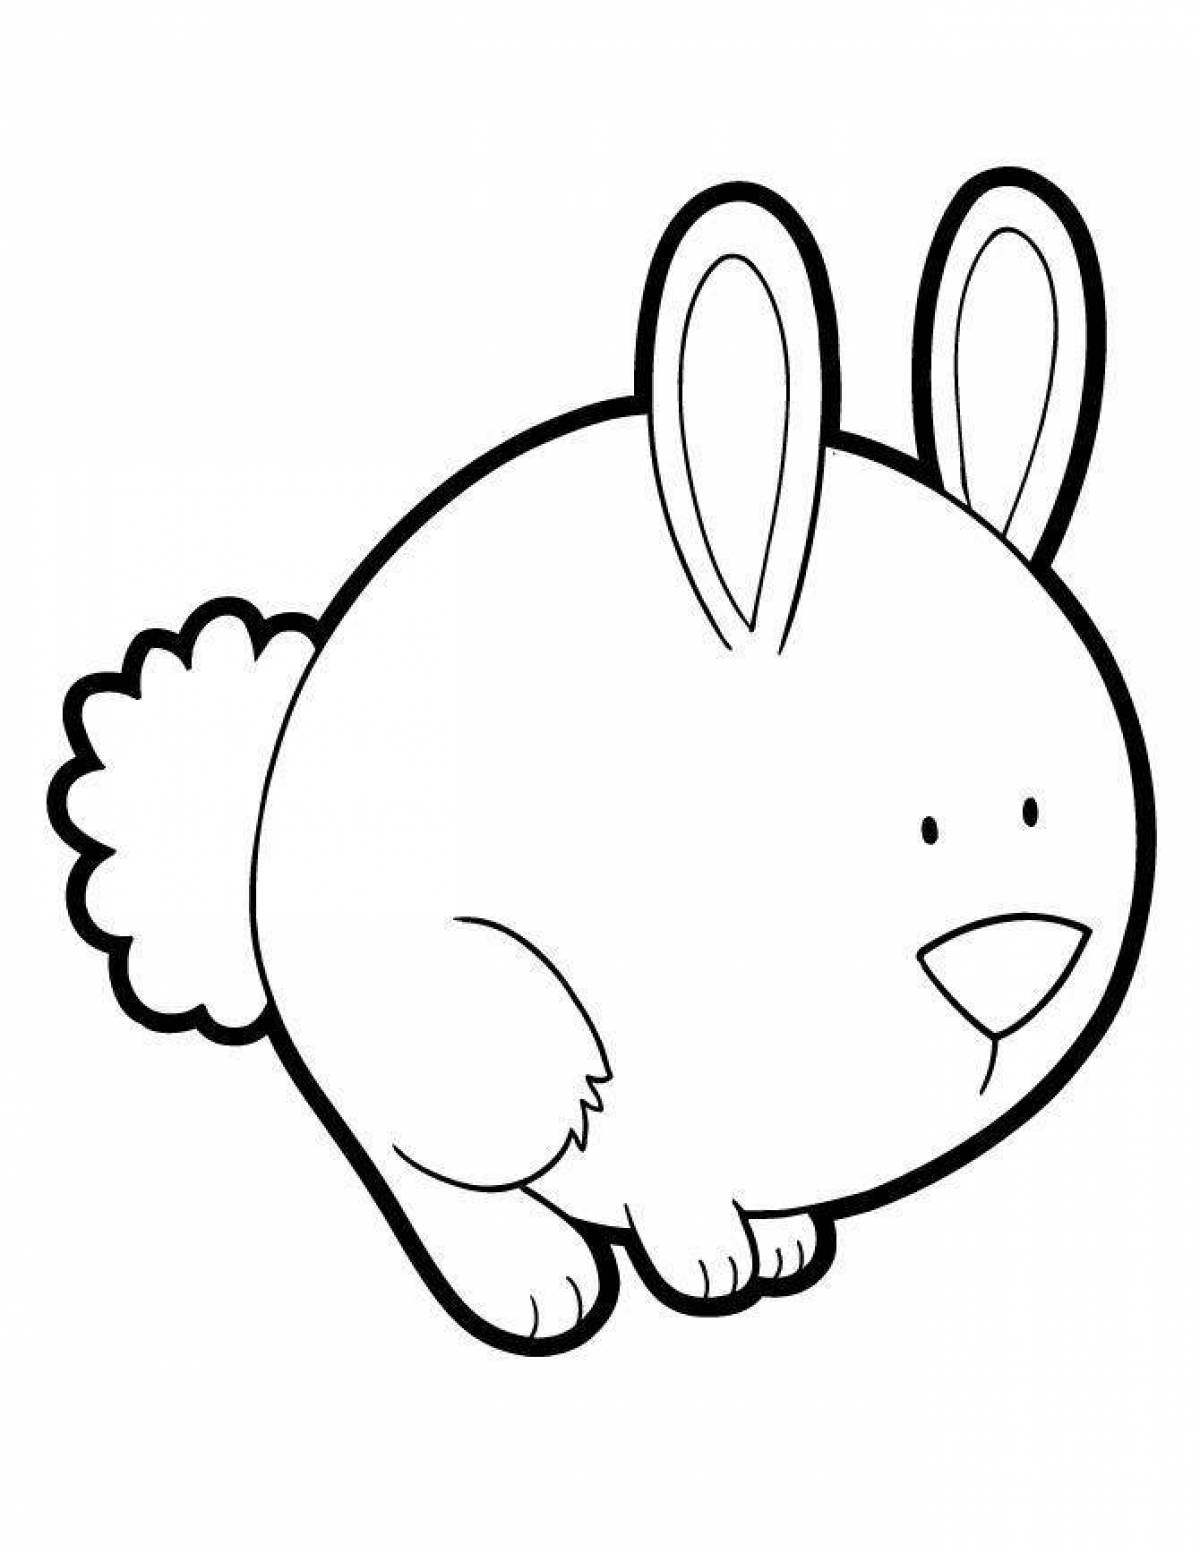 Big-love coloring bunny